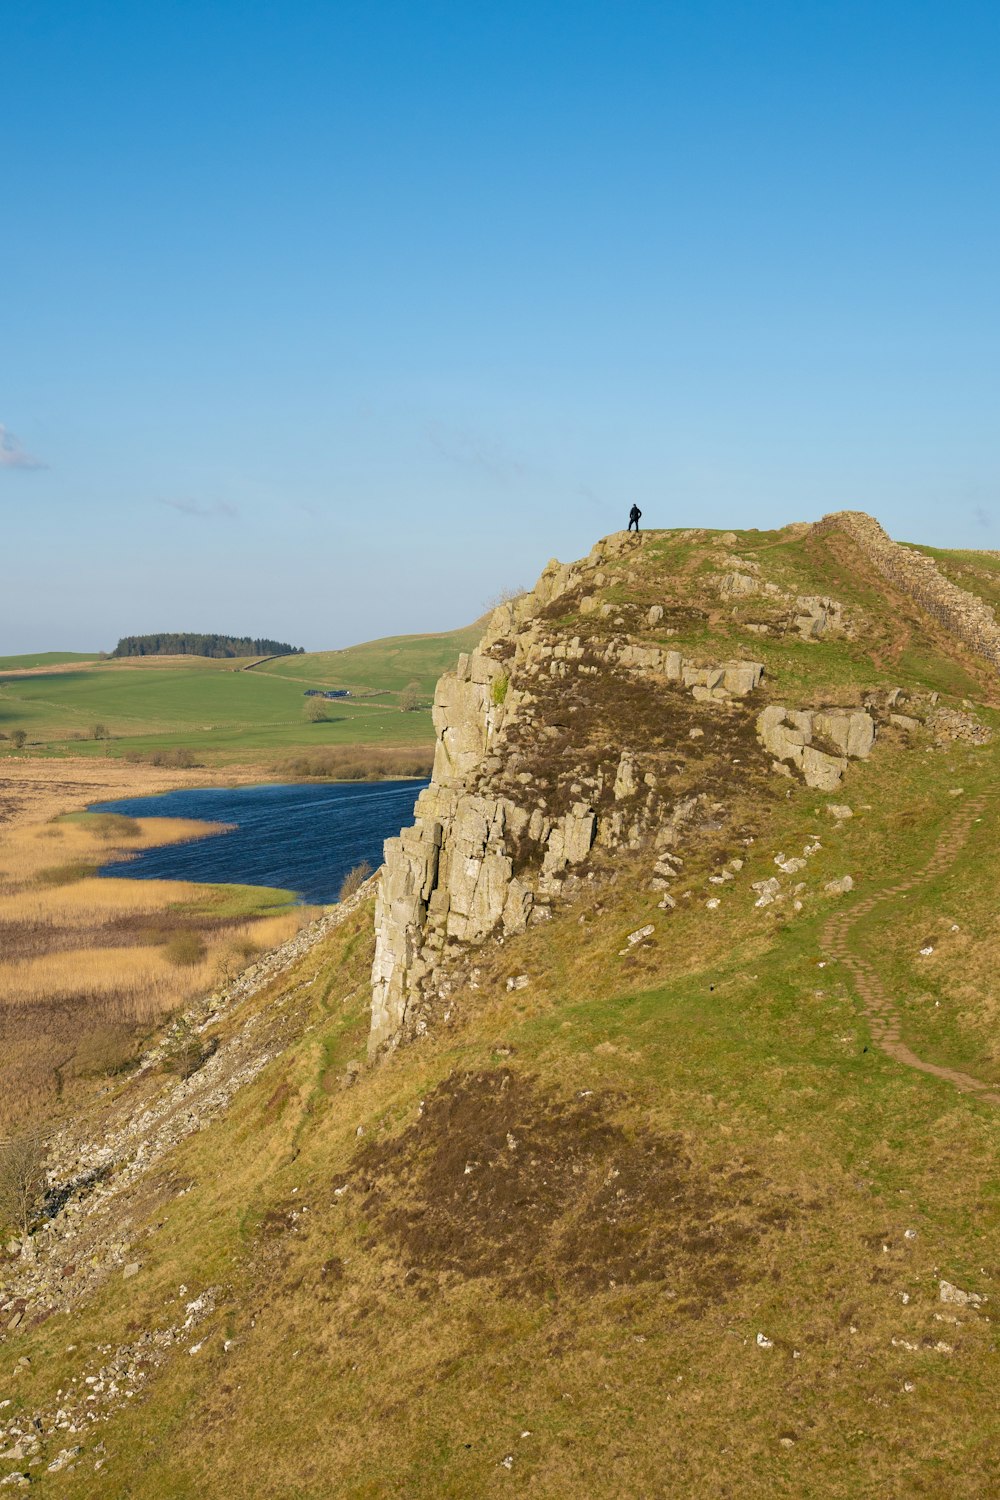 une personne debout au sommet d’une colline au bord d’un lac